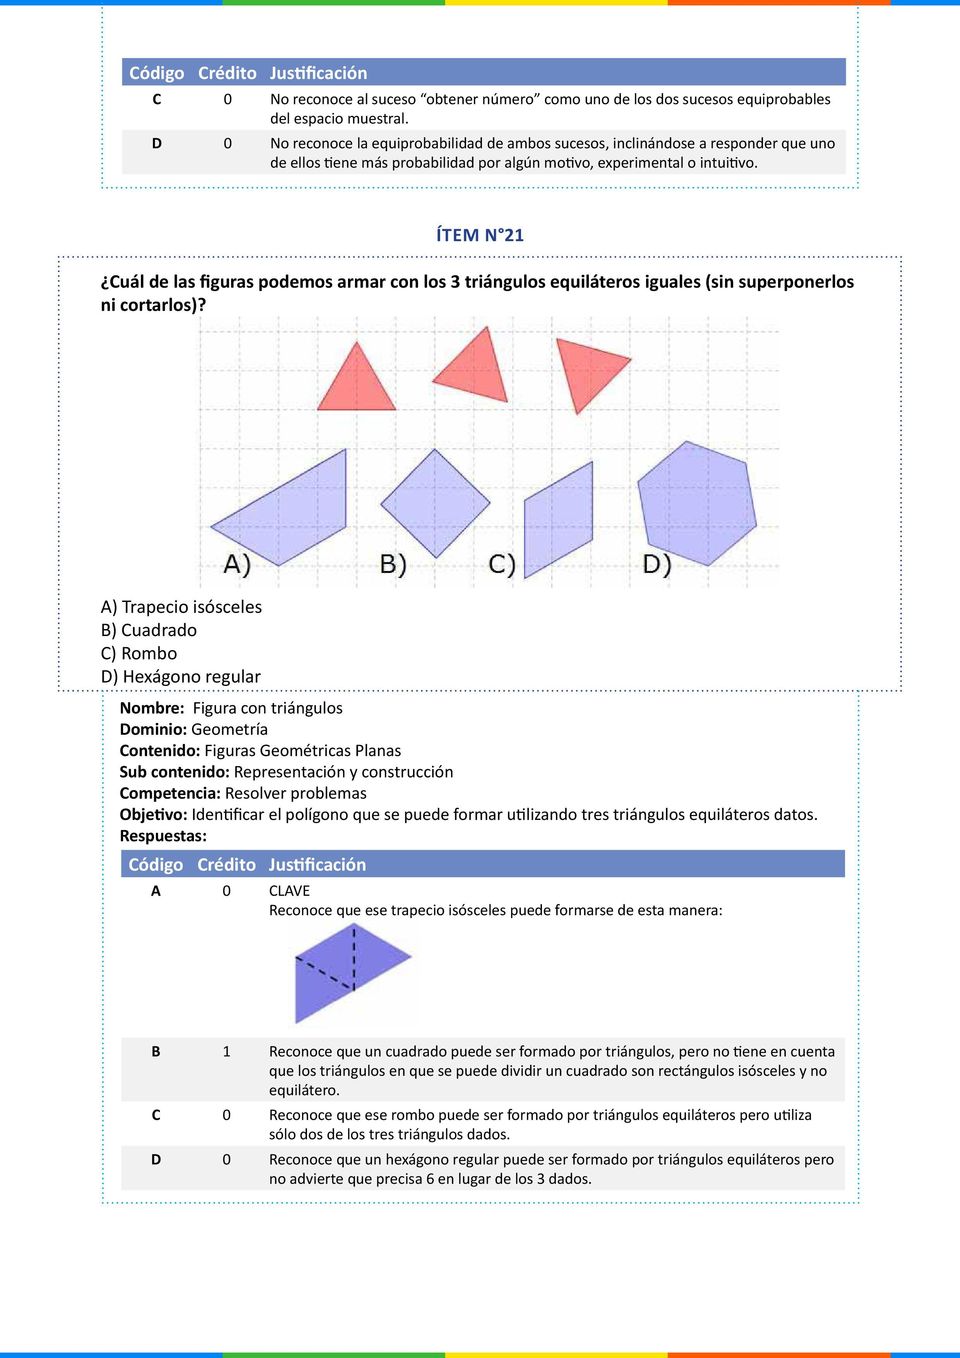 ÍTEM N 21 Cuál de las figuras podemos armar con los 3 triángulos equiláteros iguales (sin superponerlos ni cortarlos)?